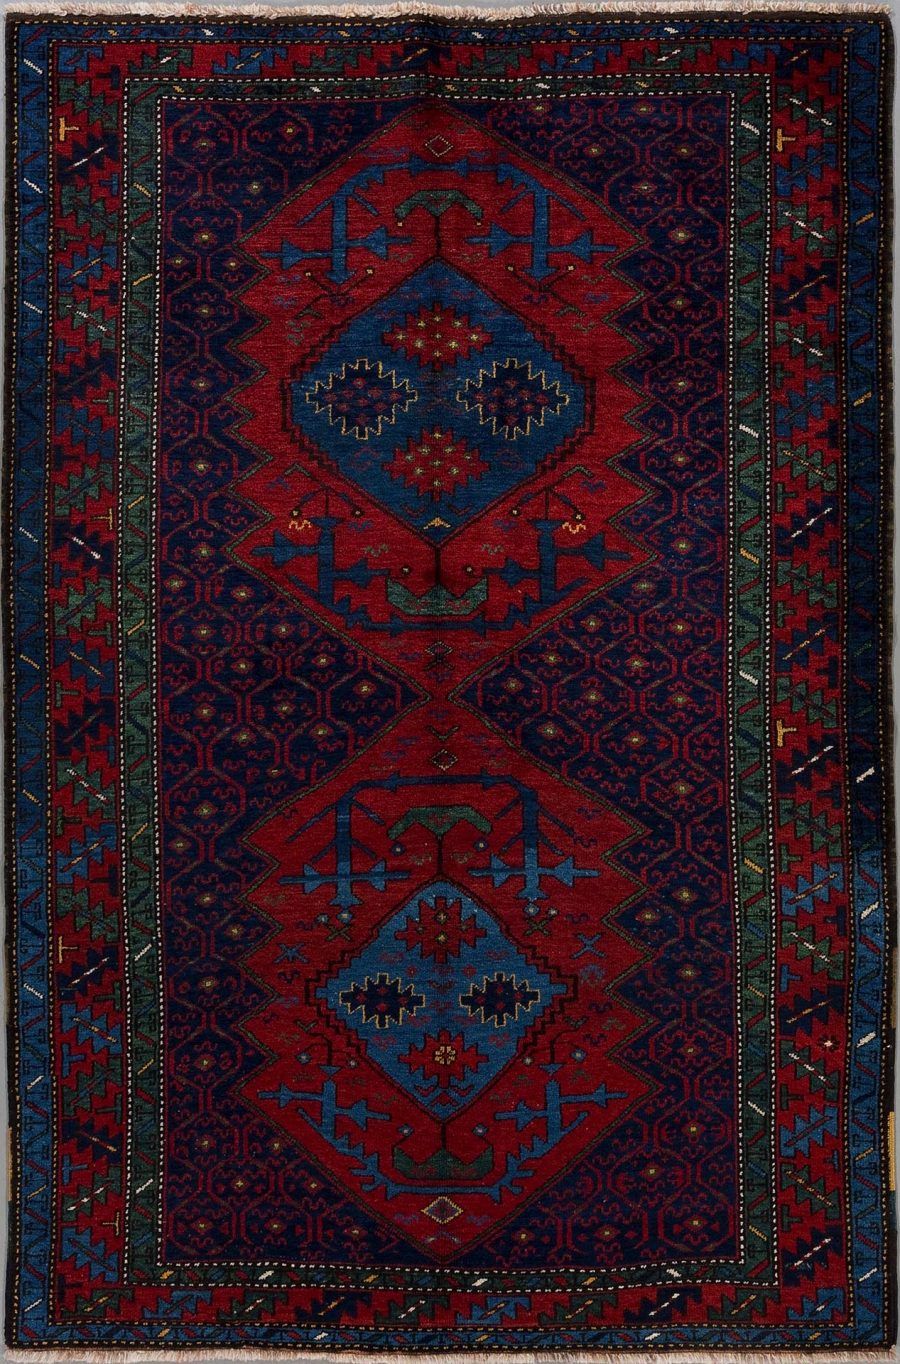 Traditioneller handgeknüpfter Teppich mit komplexem, symmetrischem Muster in Rot- und Blautönen mit Akzenten in Grün und Weiß. Zwei dominante, zentrale Rhombus-Formen umgeben von detaillierten Bordüren.